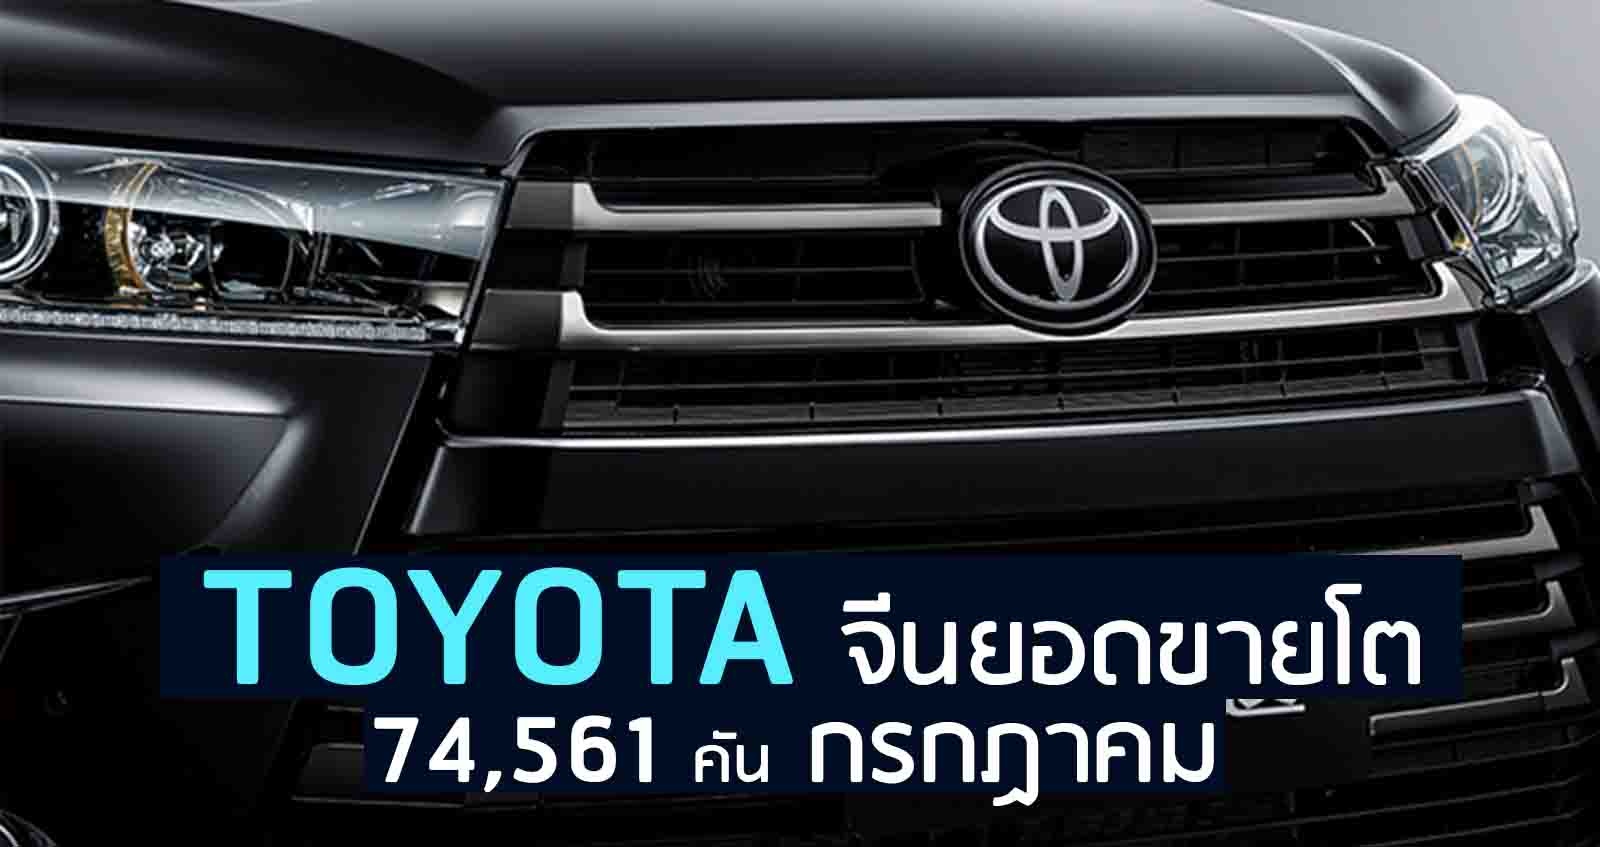 GAC Toyota จีนยอดขายโต 74,561 คัน กรกฏาคม